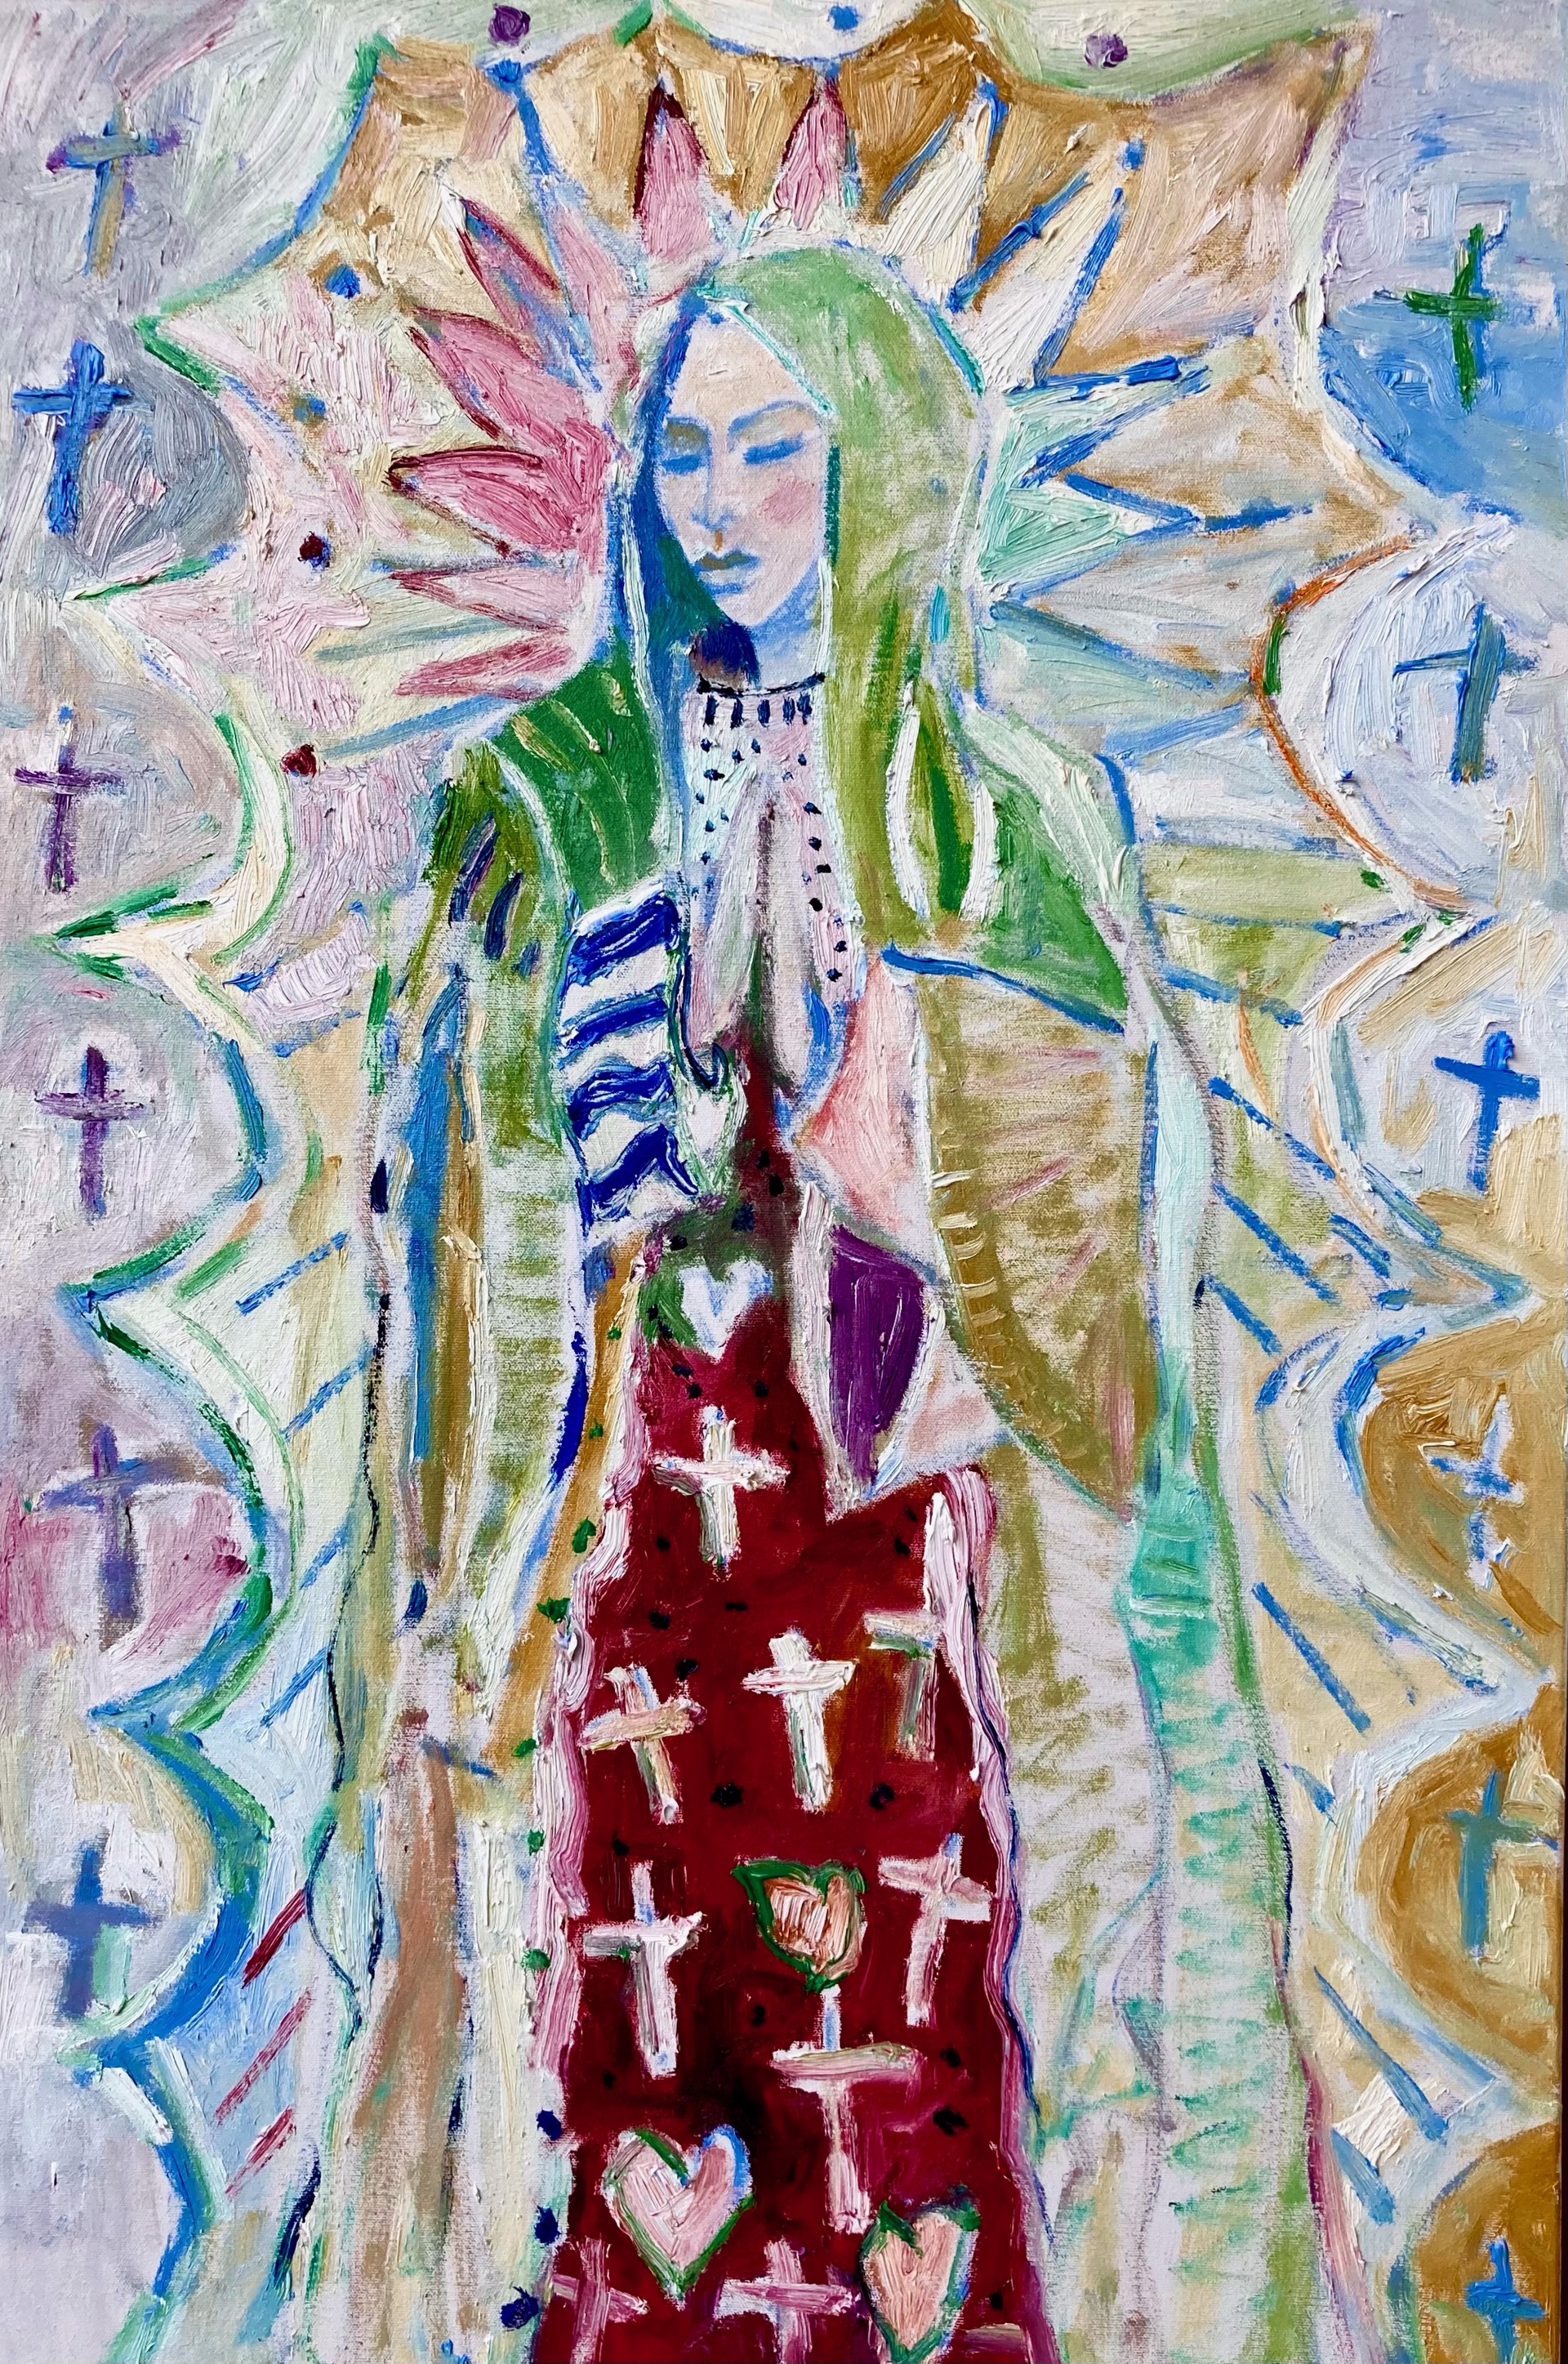 La Virgin De Guadalupe by Brad Smith